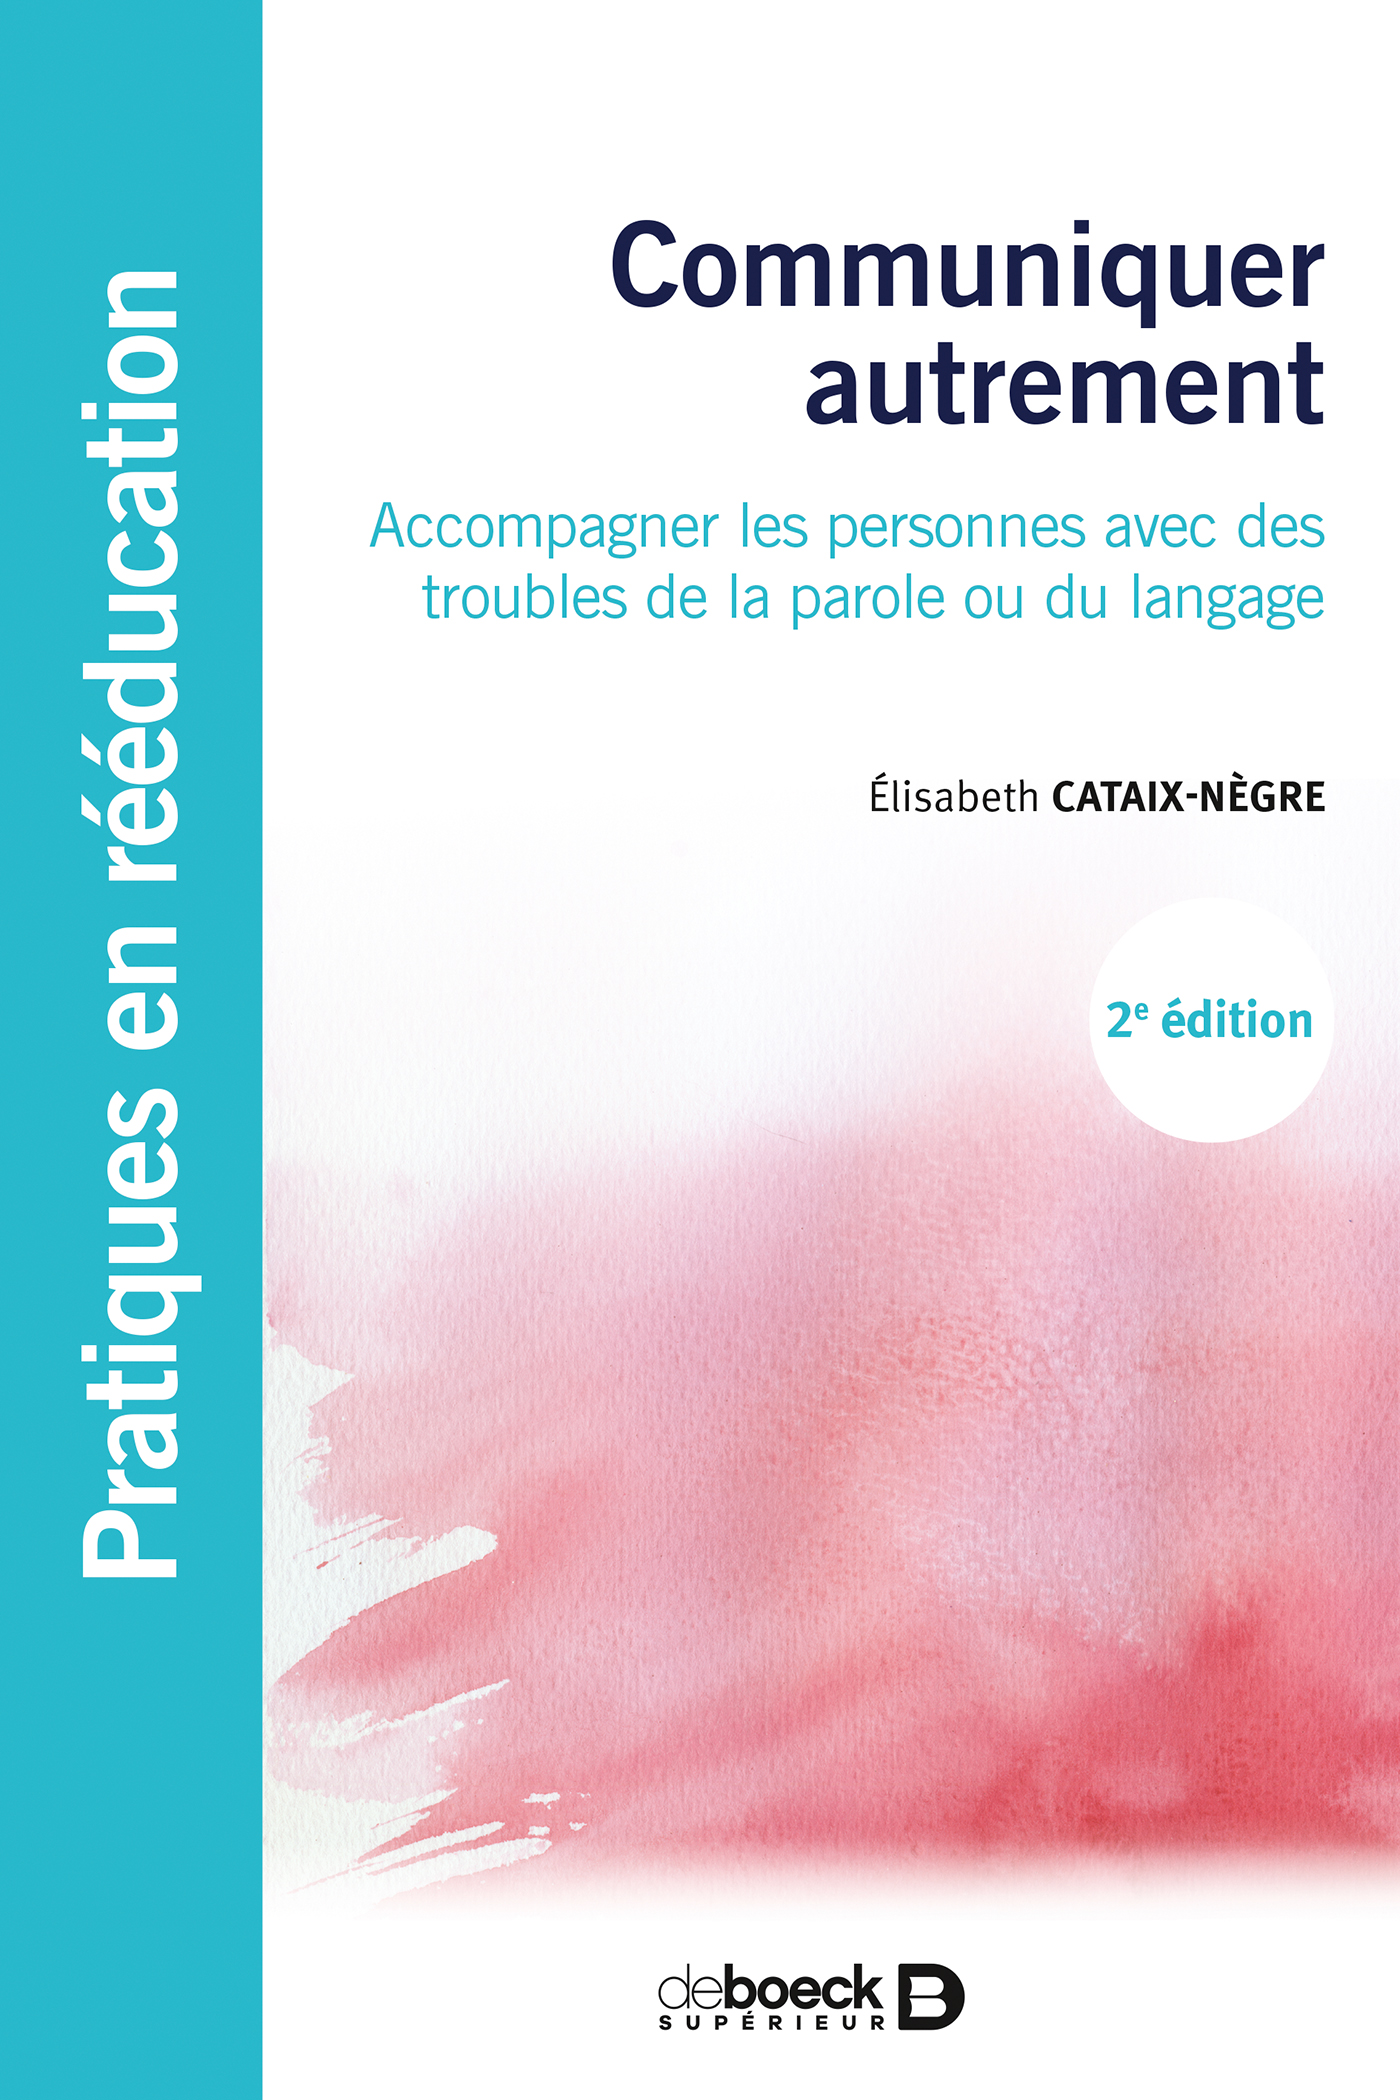 Communiquer 
autrement, Élisabeth Cataix-Nègre, éditions De Boeck Supérieur 2017